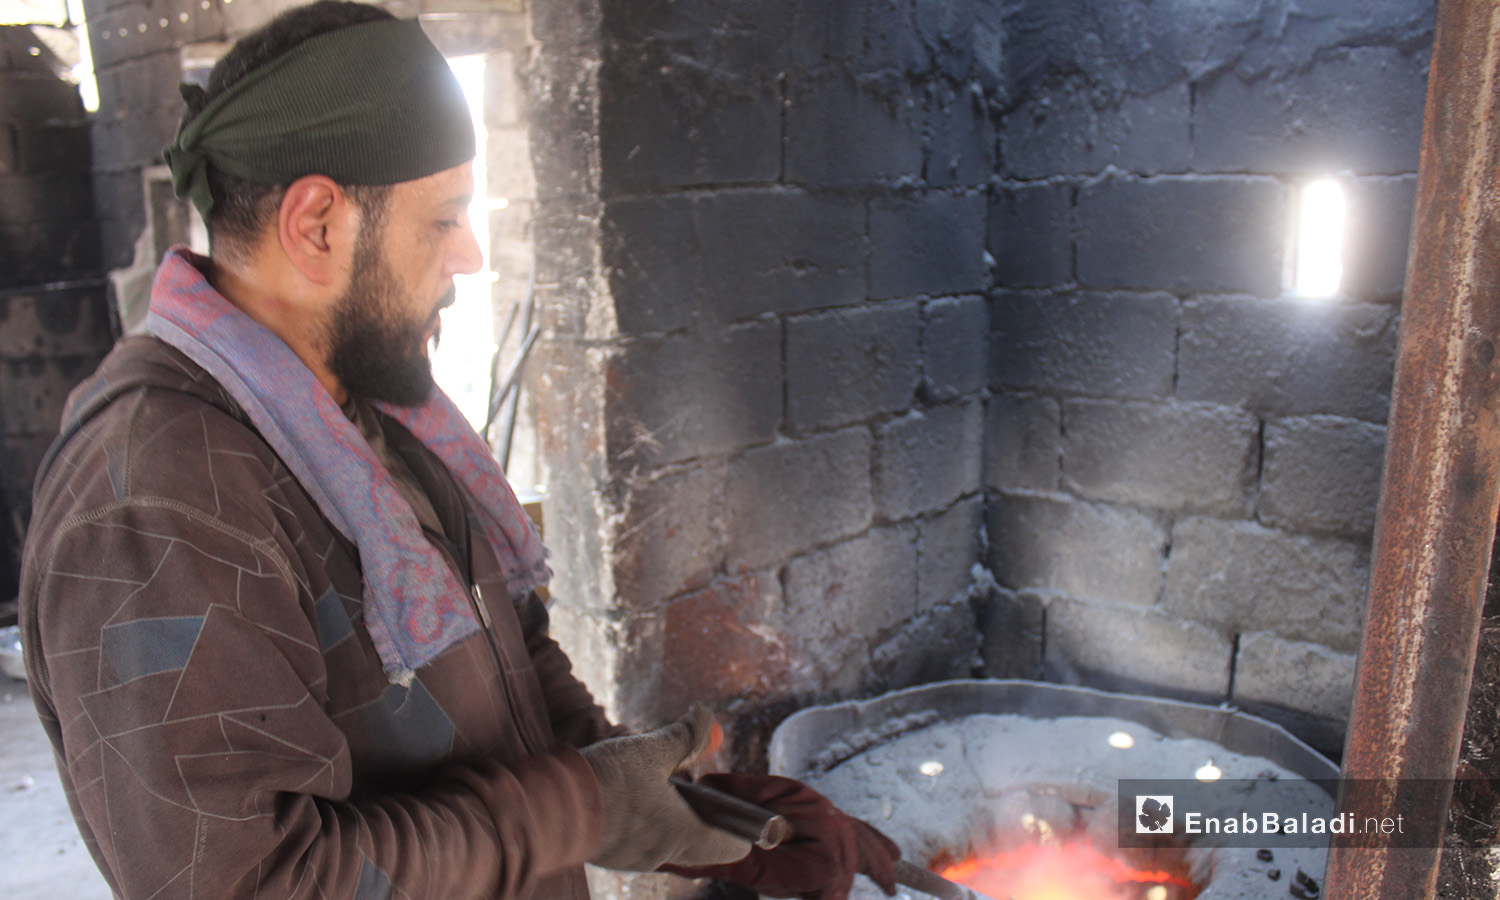 شخص يقوم بإذابة المعادن في شمال إدلب  - 26 آب 2020 (عنب بلدي / إياد عبد الجواد)